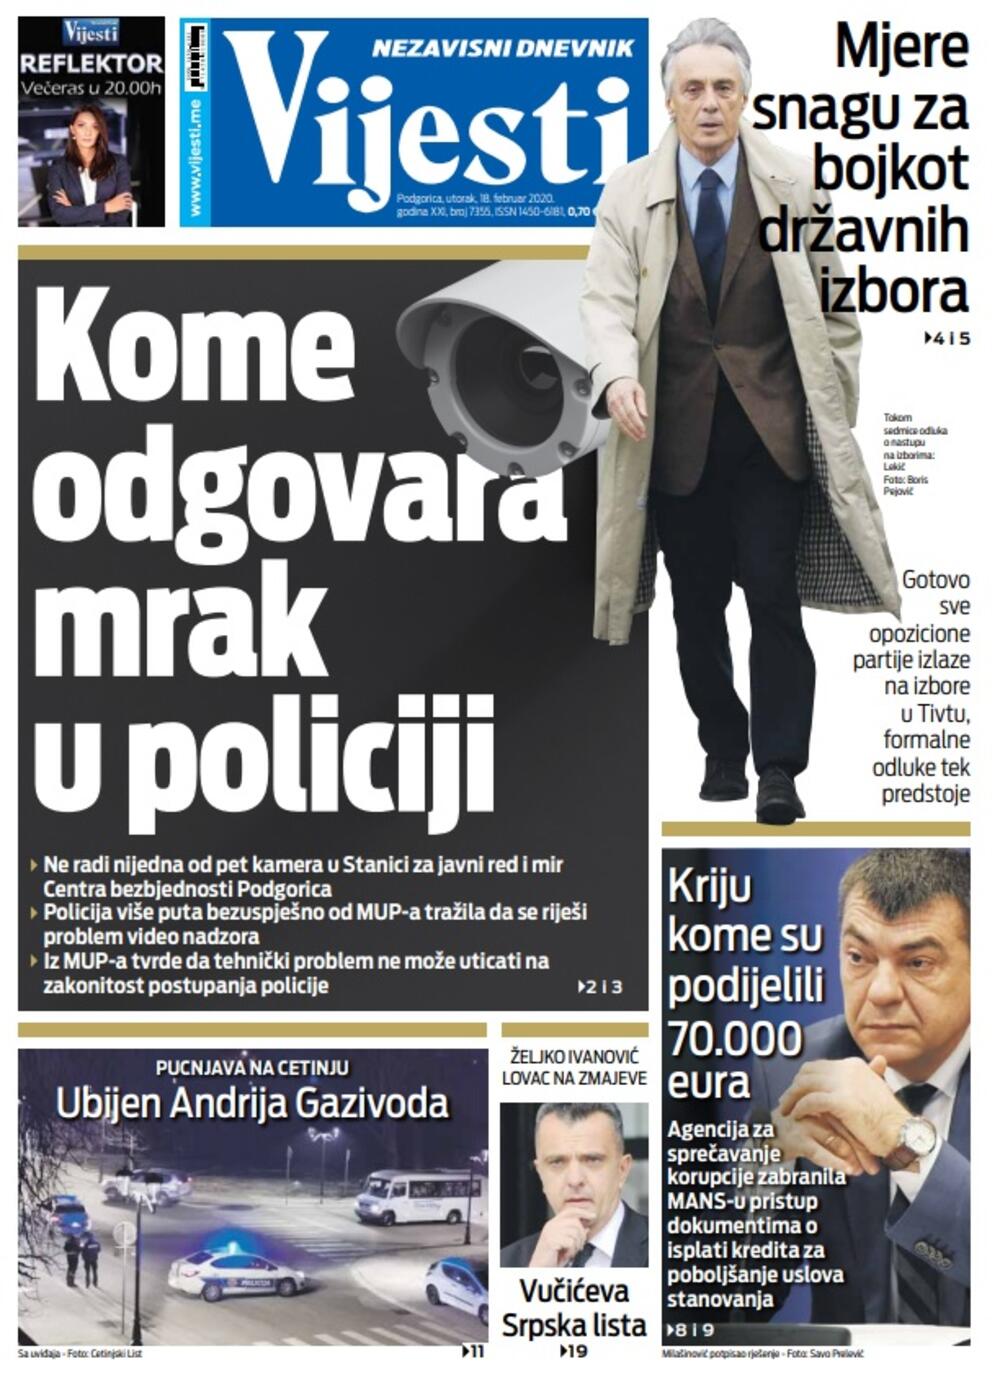 Naslovna strana "Vijesti" za 18. februar 2020. godine, Foto: "Vijesti"